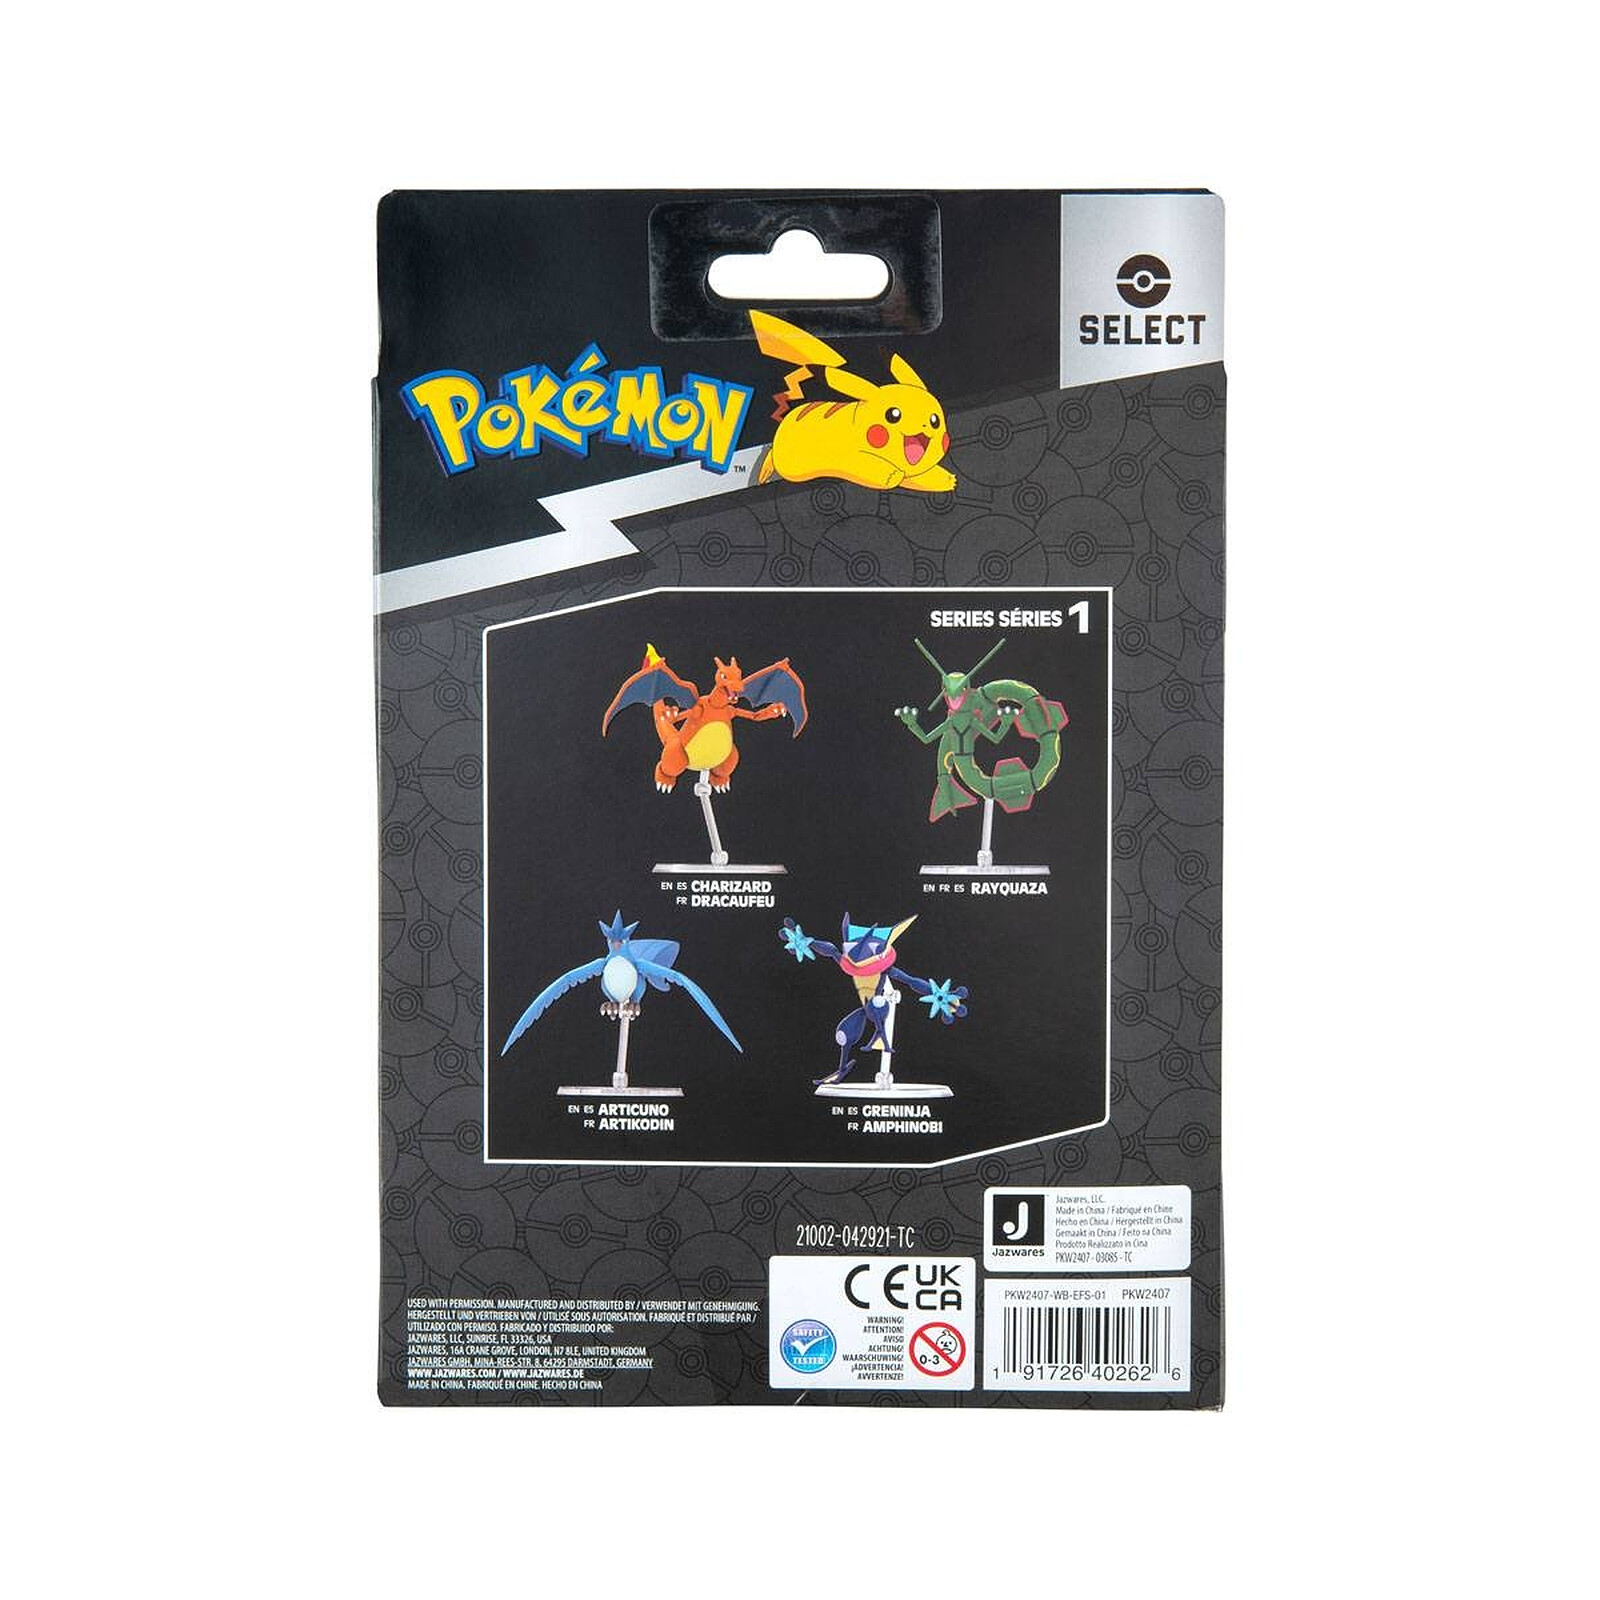 Pokémon - Figurine Charizard Dracaufeu articulée à construire - La